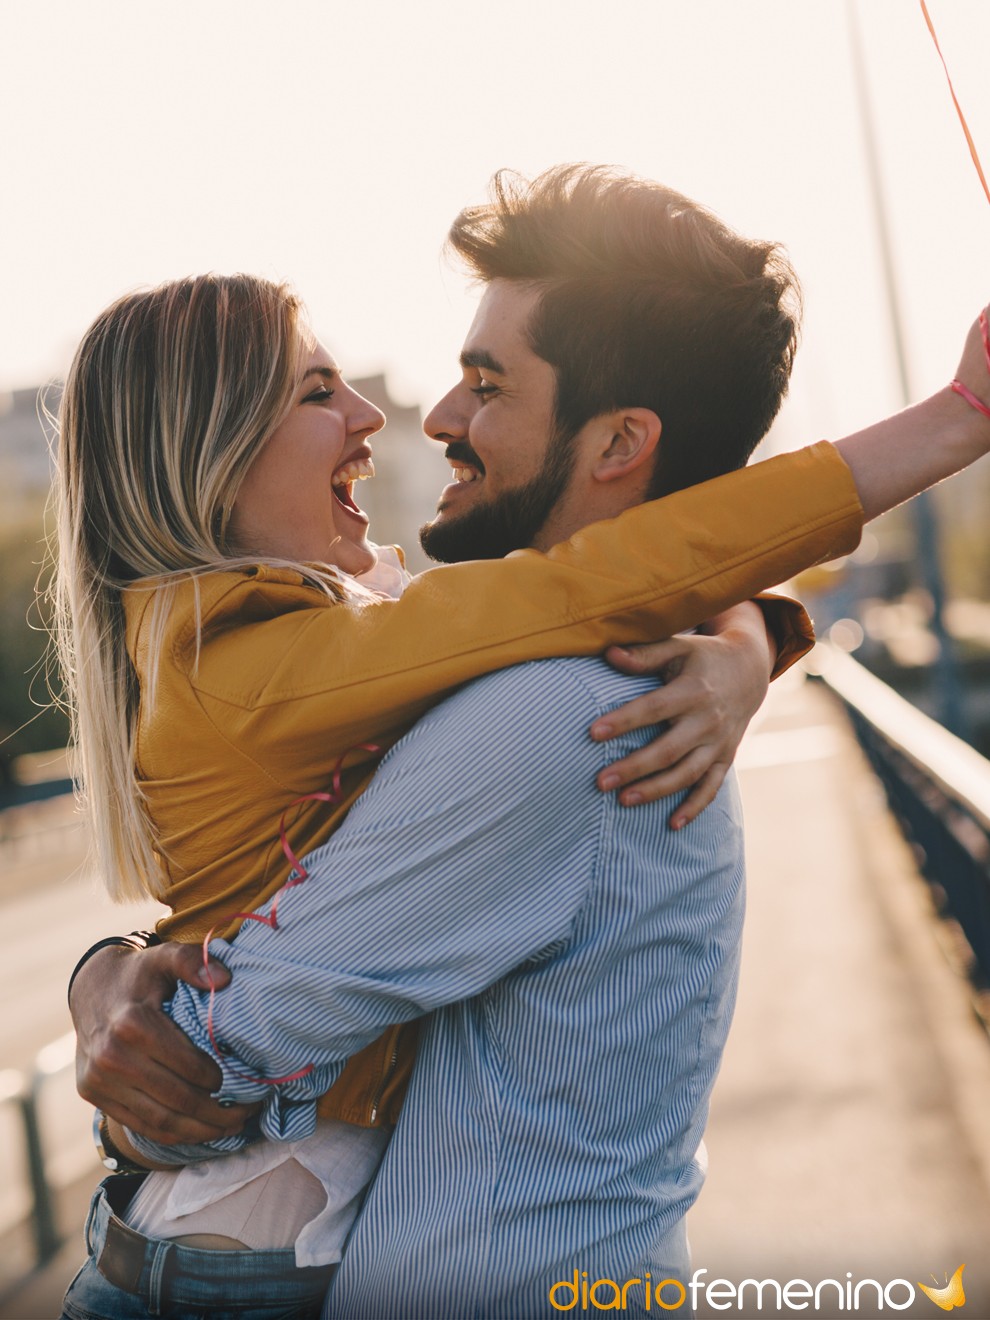 14 ideas atrevidas para hacer con tu pareja - ¡DIVERTIDAS y ERÓTICAS!